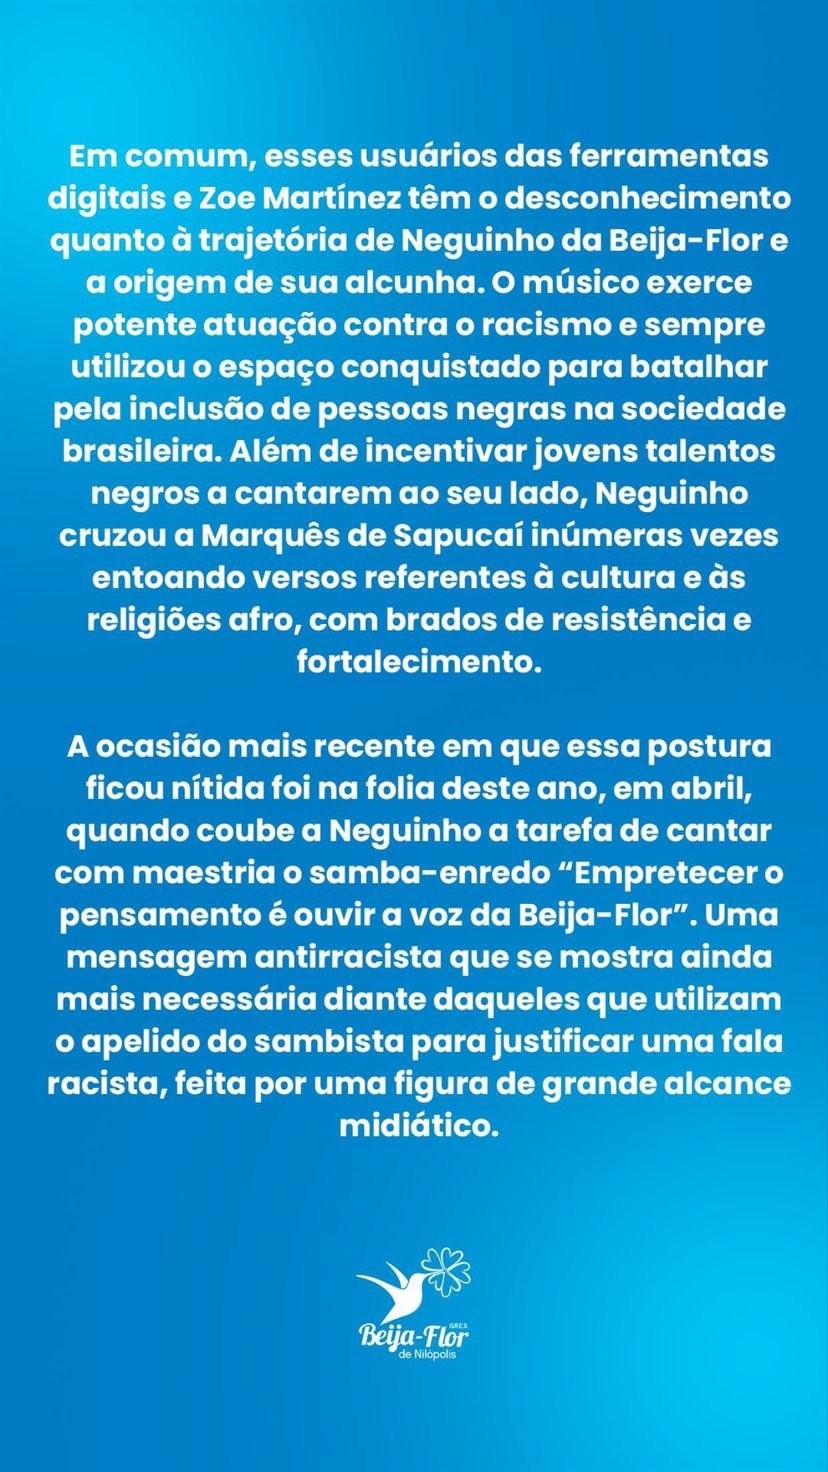 Beija-Flor faz carta aberta em defesa de Neguinho e contra o racismo (Foto: Reprodução Twitter)